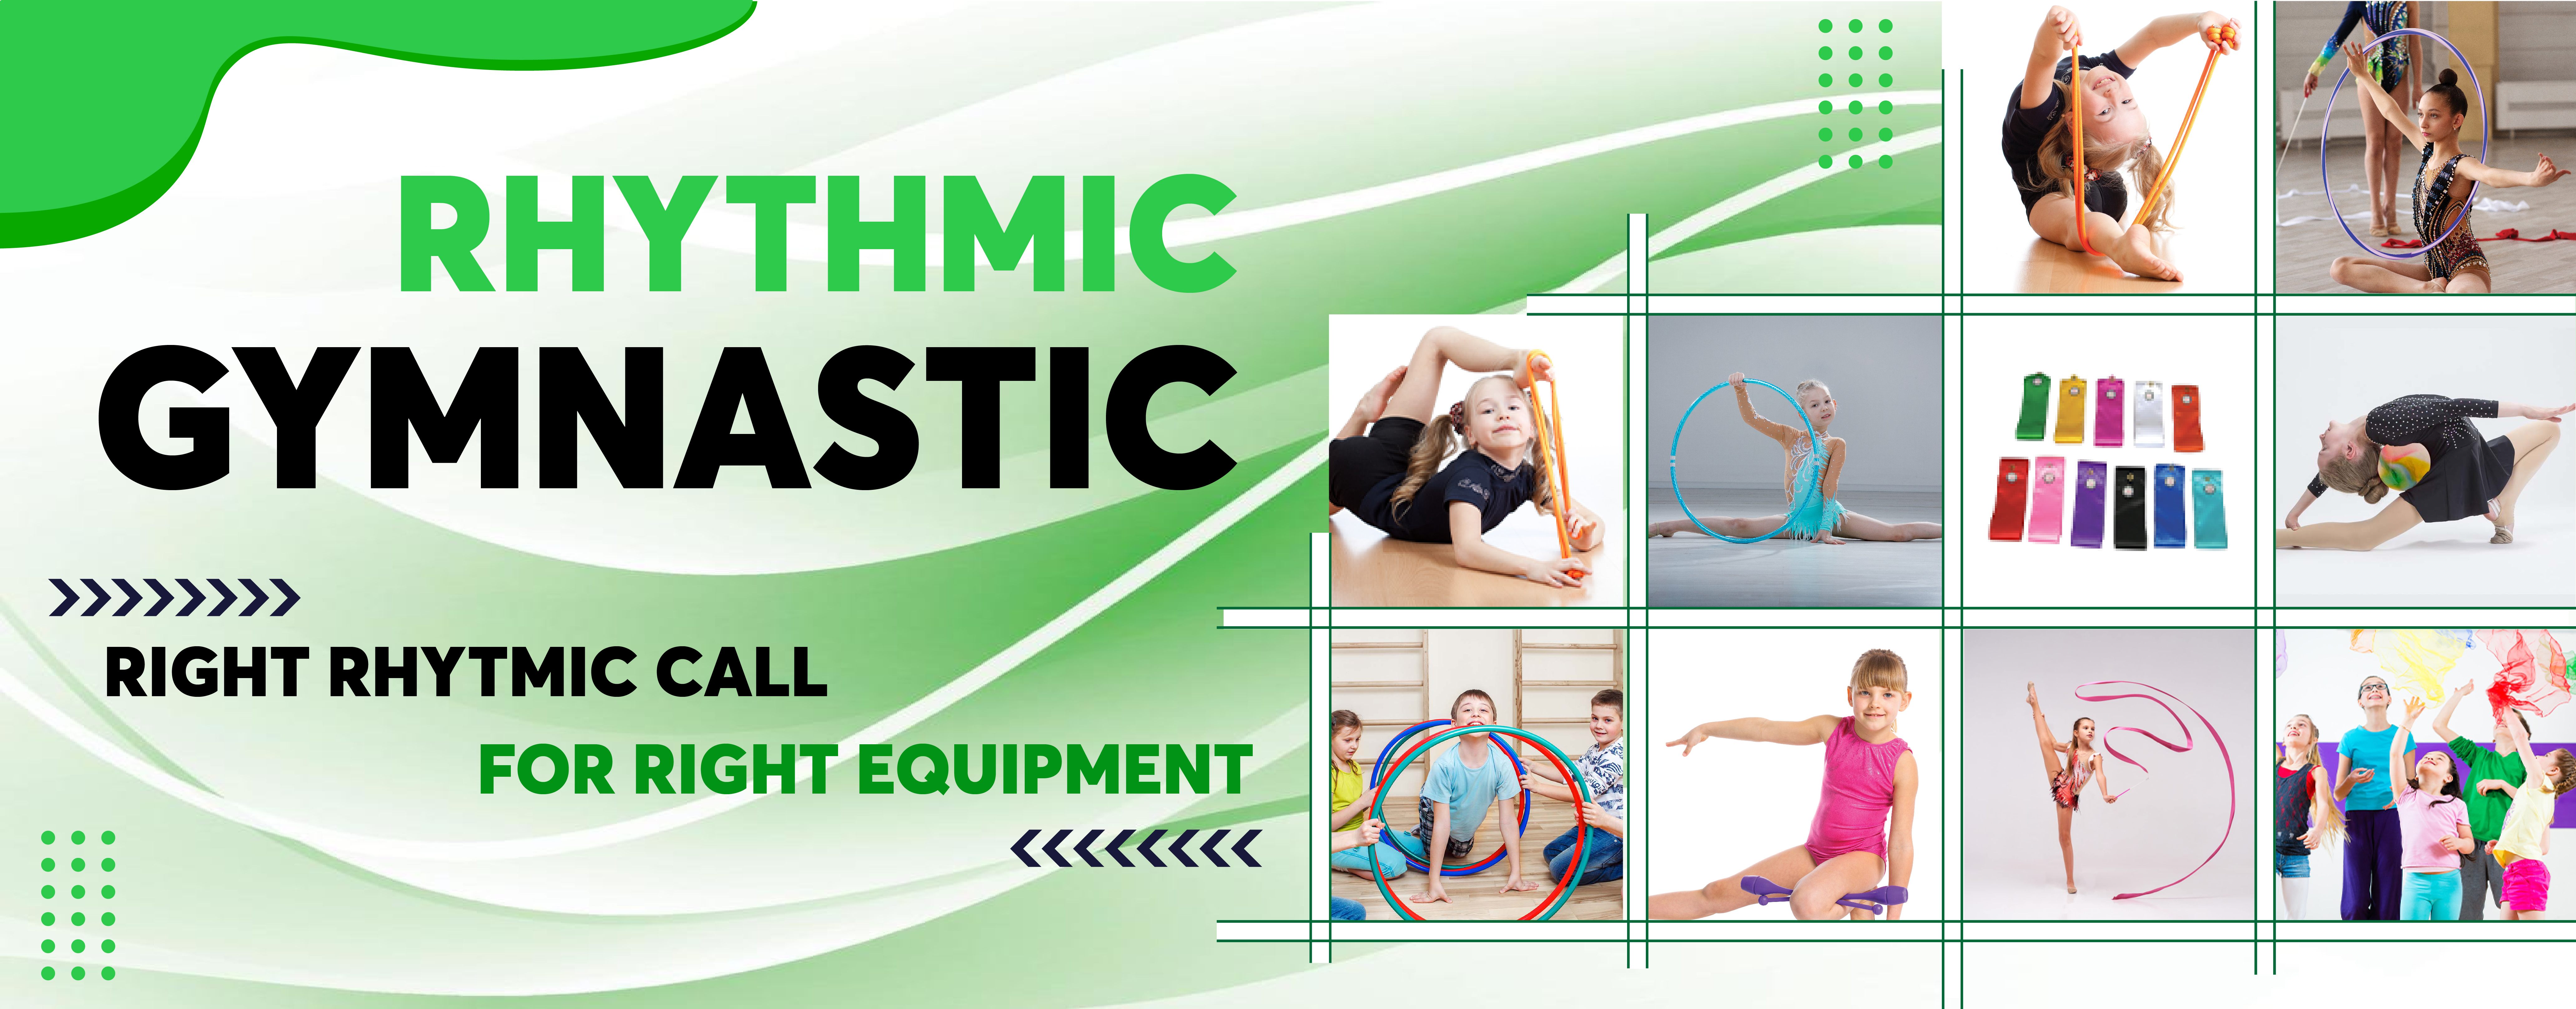 Rhythmic Gymnastic Equipment